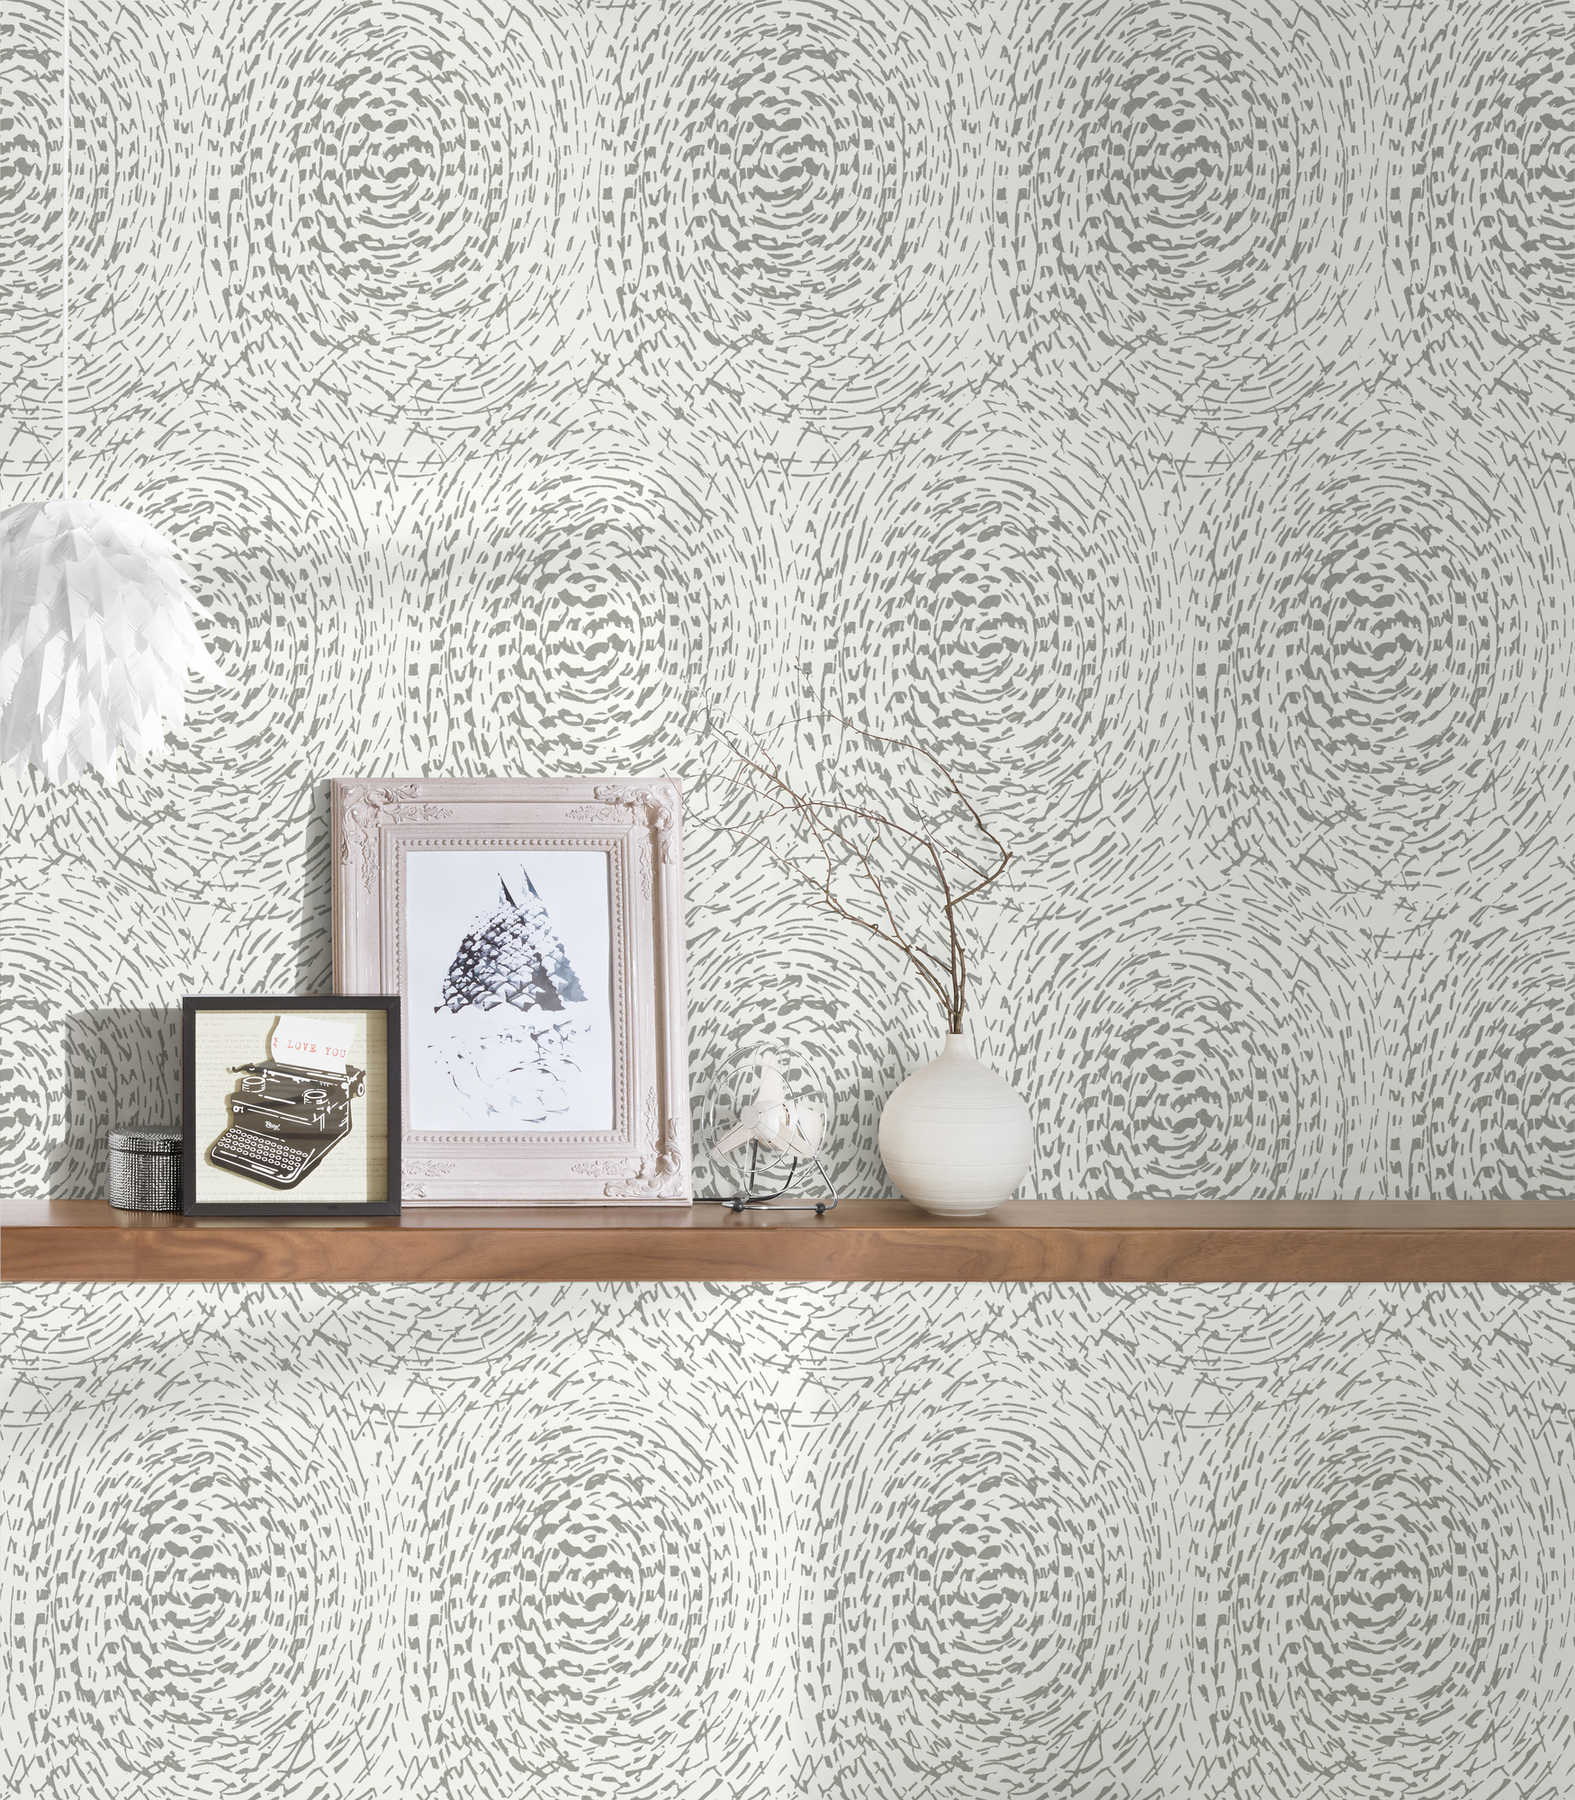             Wallpaper ethnic design with metallic colour & structure design - silver, white
        